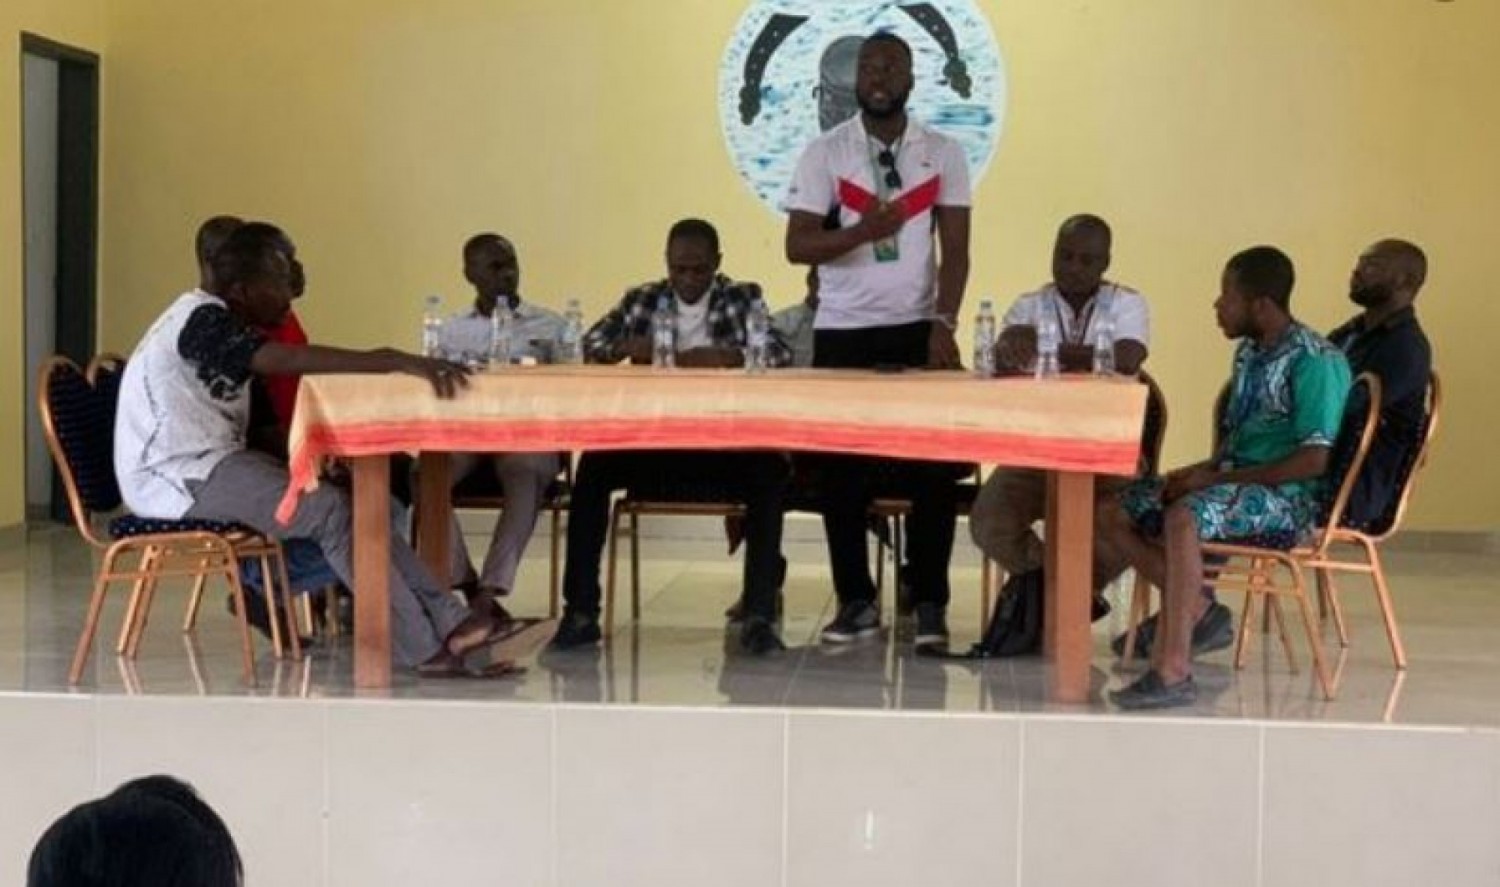 Côte d'Ivoire : Mobile money, après une semaine de grève, les acteurs et propriétaires lèvent leur mot d'ordre de grève, mais campent sur leurs revendications, ce qu'ils prévoient